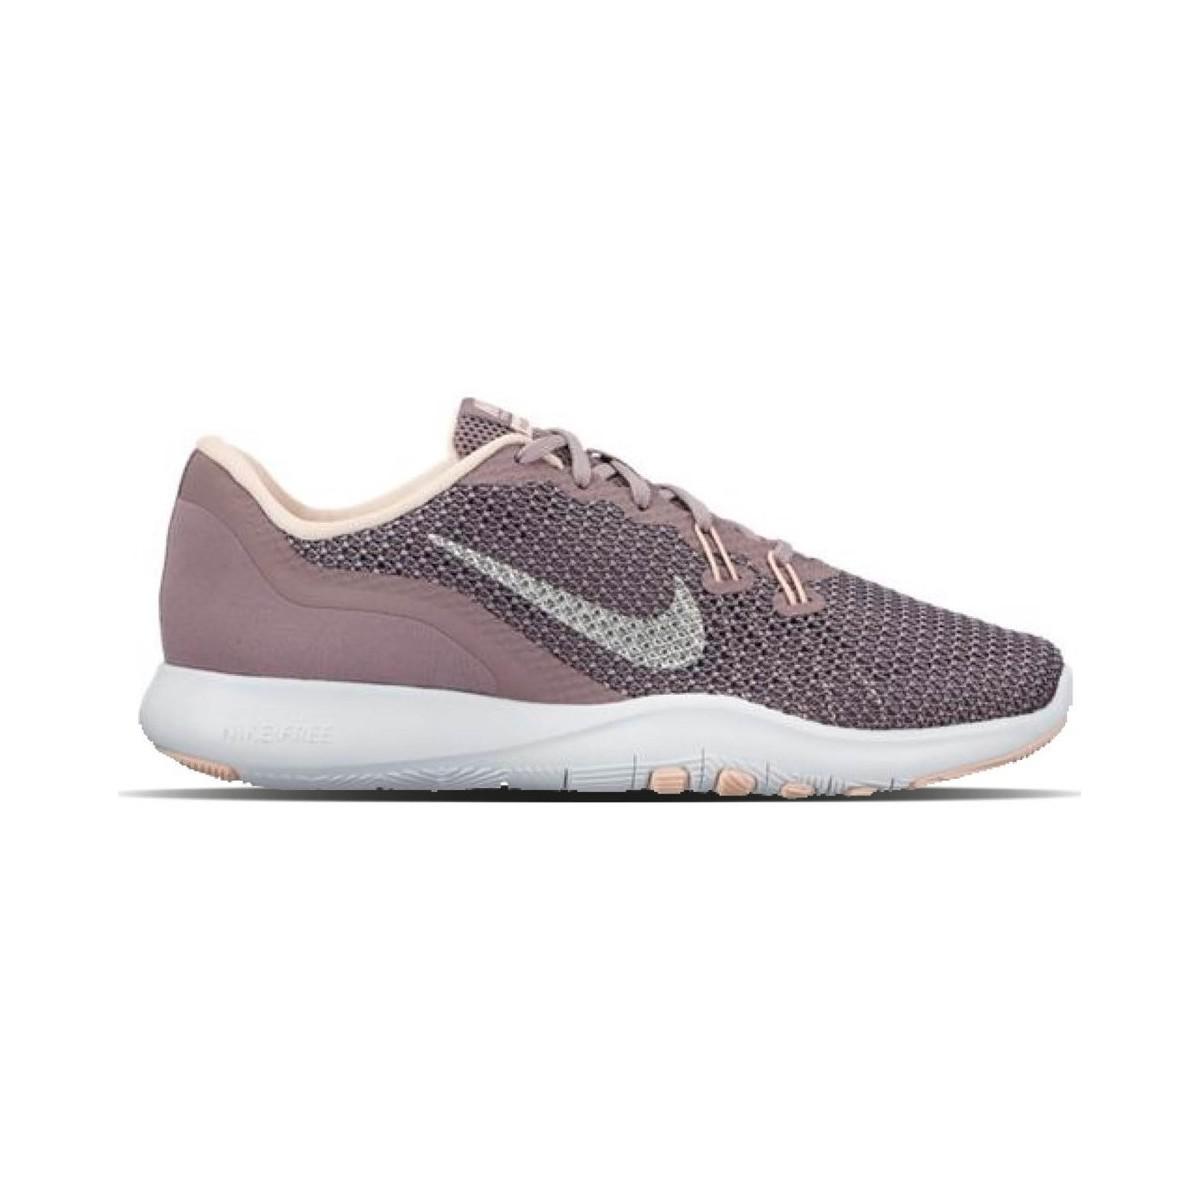 Nike Flex Tr 7 Bionic 917713 200 Women's Shoes (trainers) In Purple - Lyst